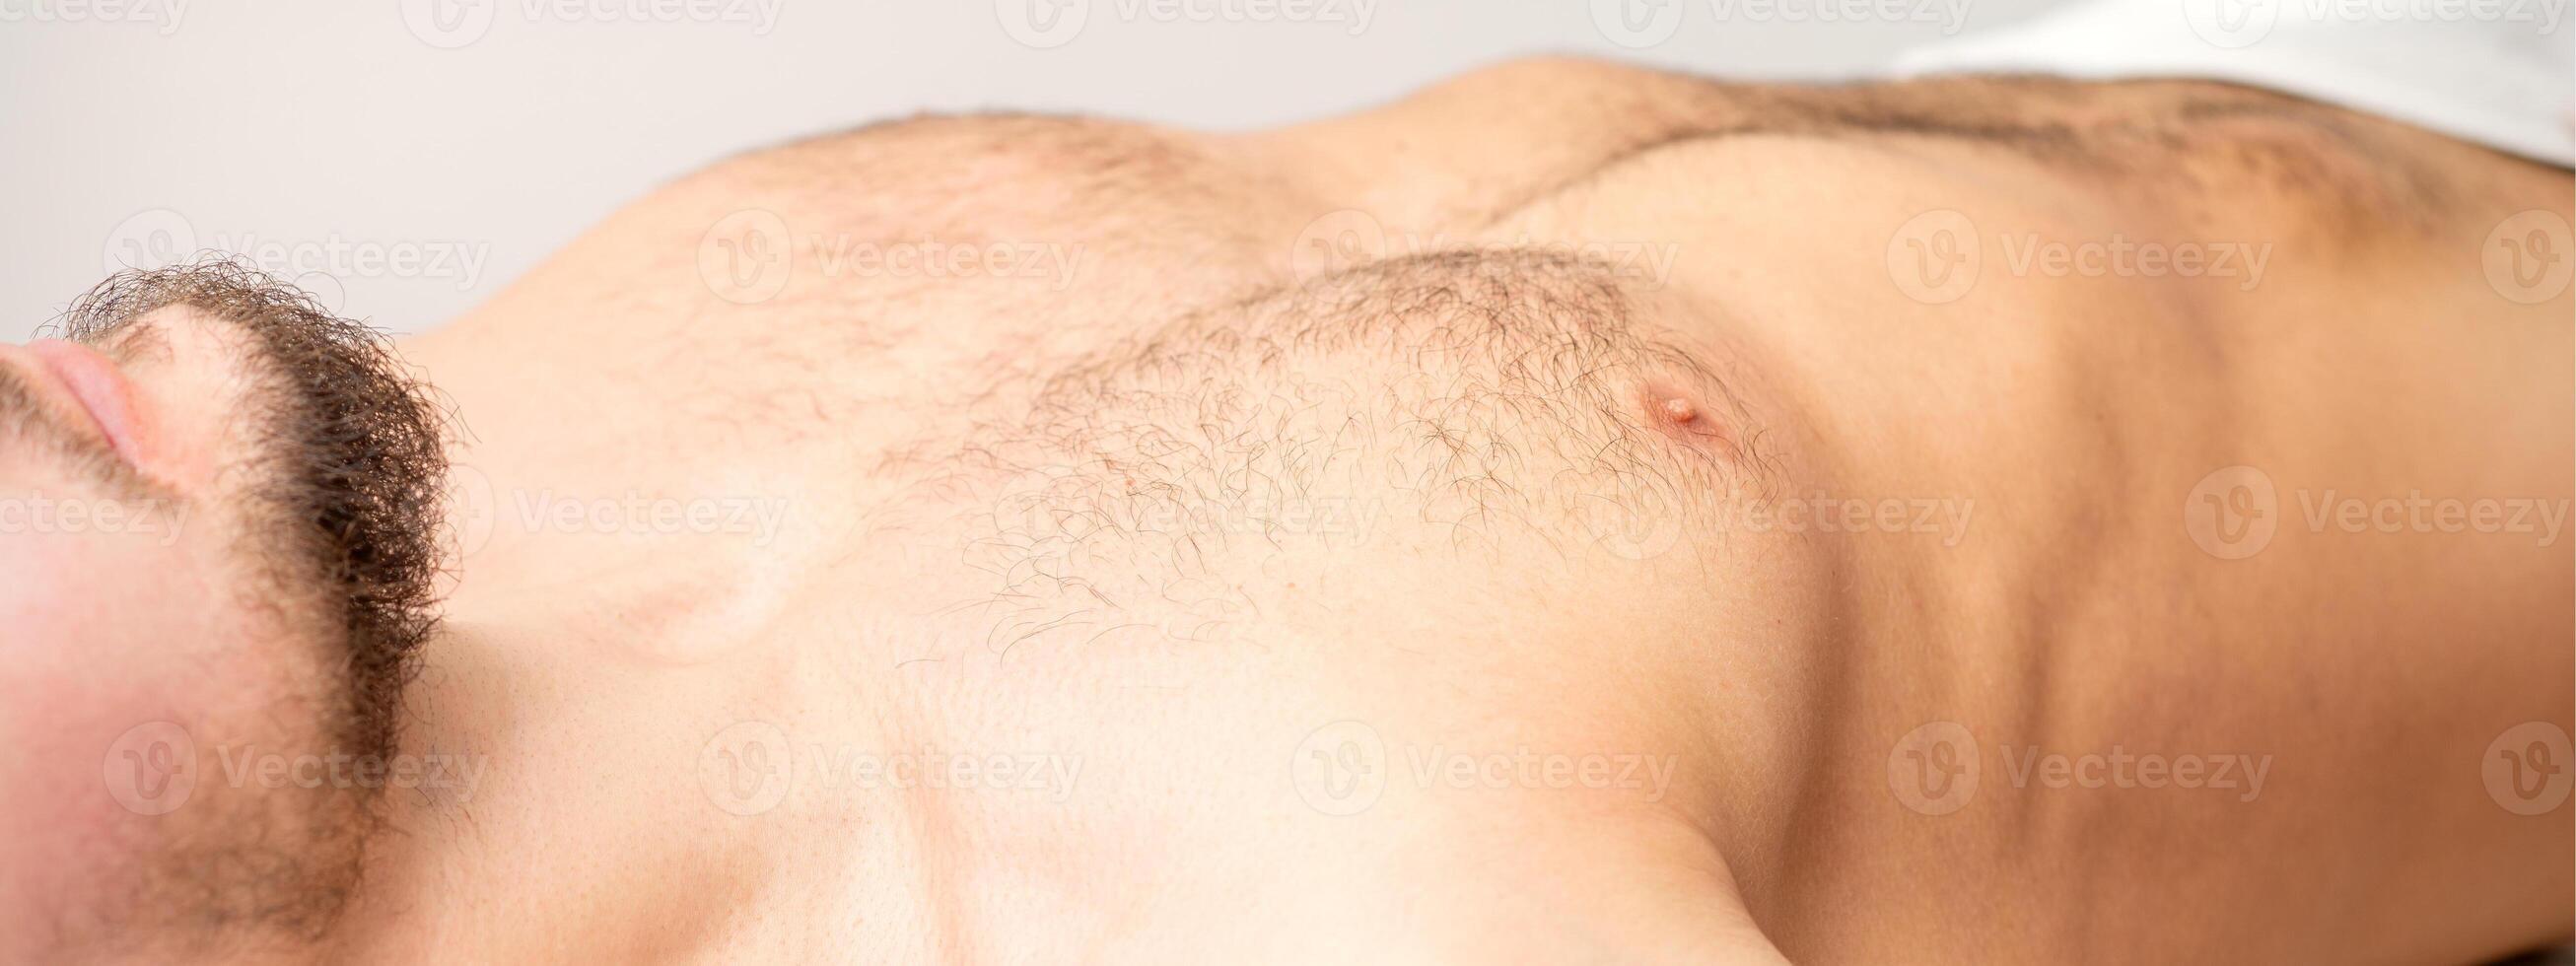 hårig kropp, mage, och bröst av en man liggande innan epilering. foto